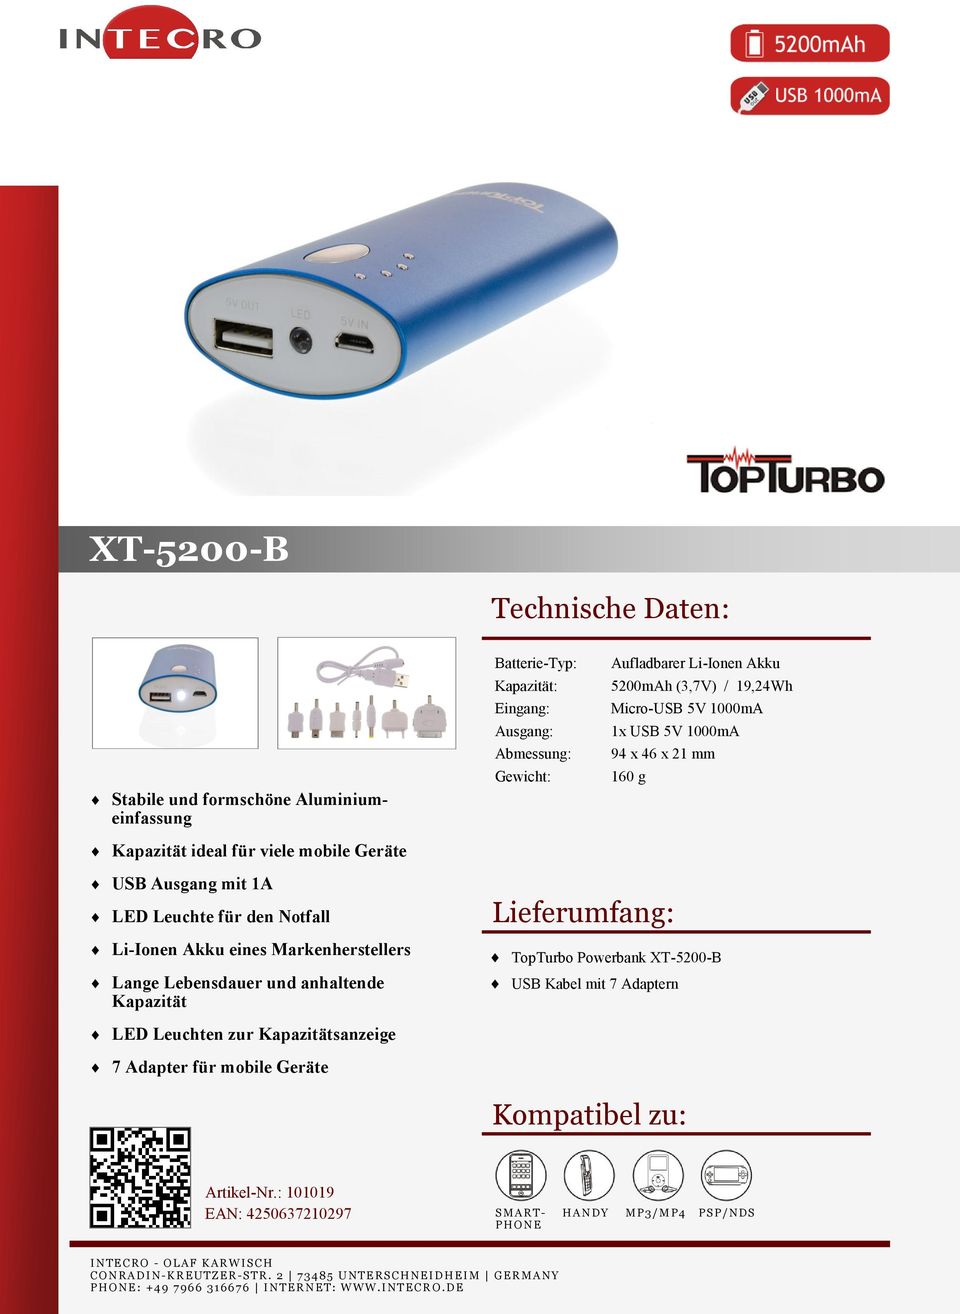 Notfall Li-Ionen Akku eines Markenherstellers Lange Lebensdauer und anhaltende Kapazität TopTurbo Powerbank XT-5200-B USB